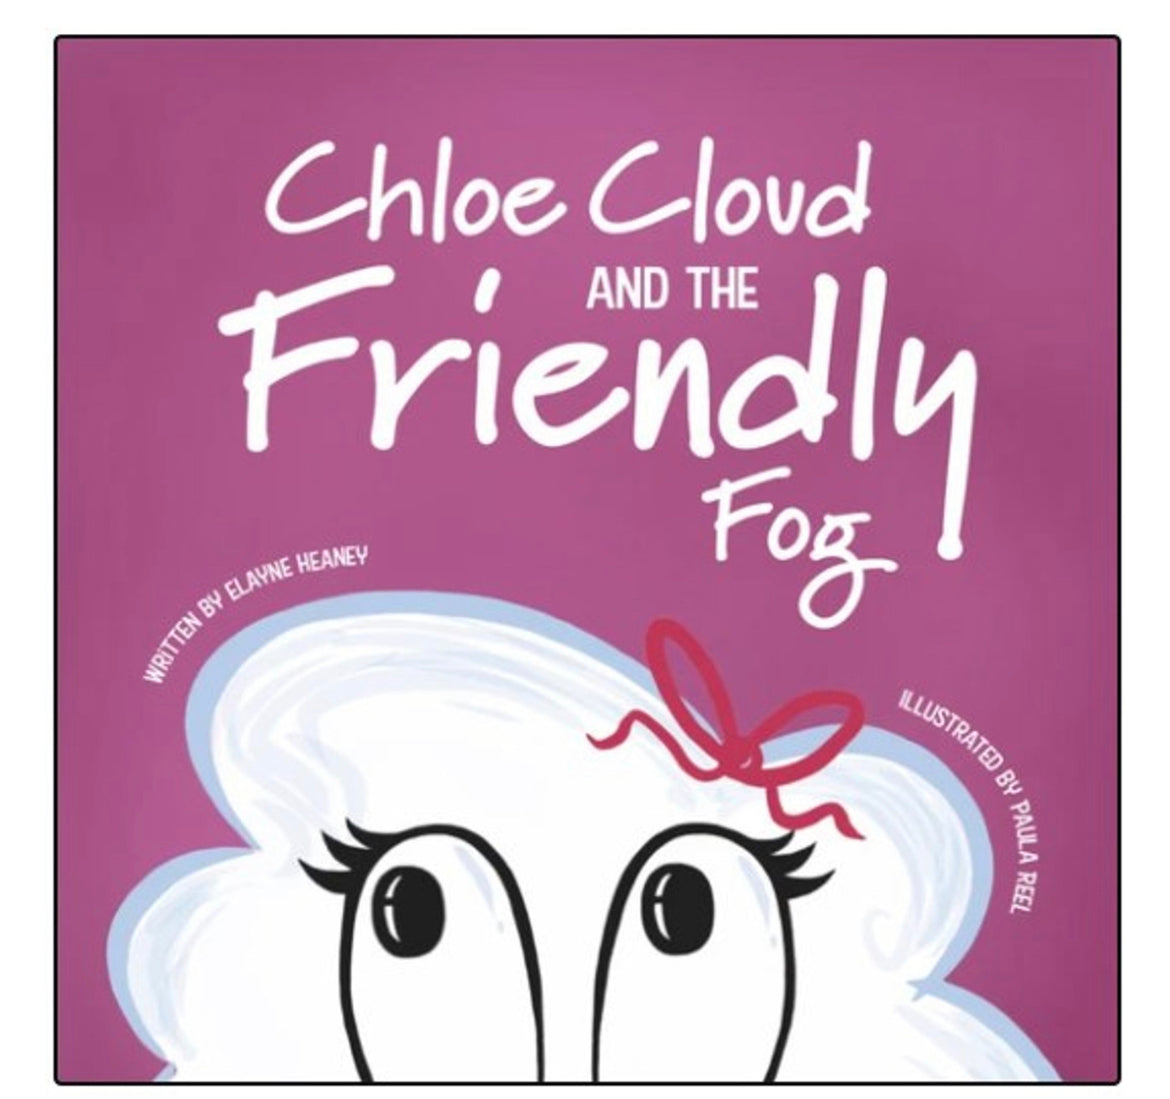 Chloe Cloud and the friendly fog Irish kids book